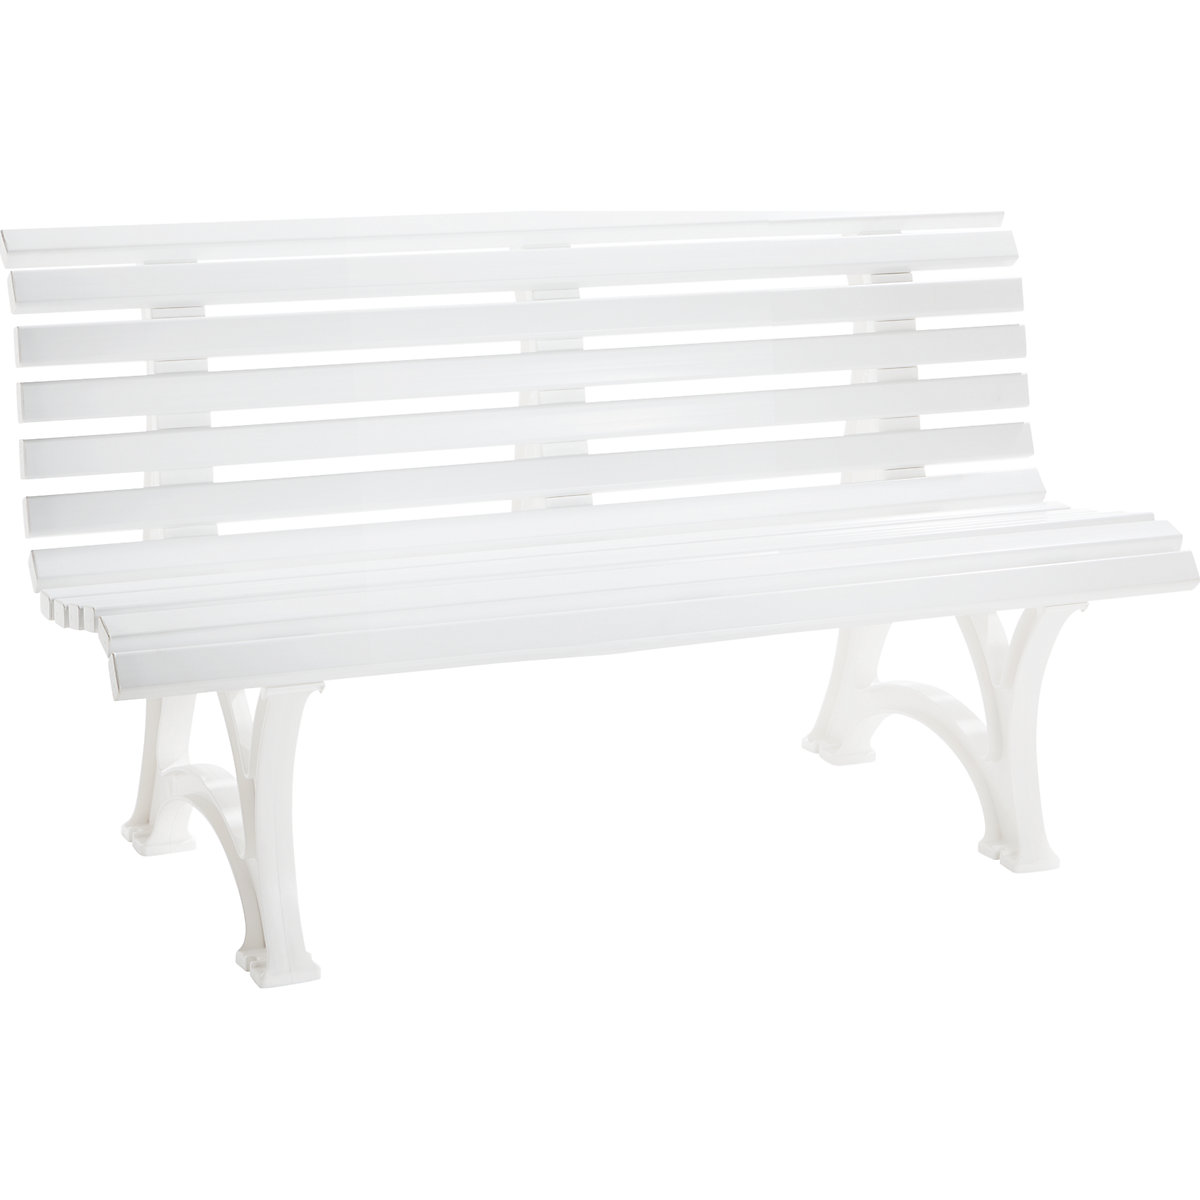 Parková lavička z plastu, s 13 lištami, šířka 1500 mm, bílá-6